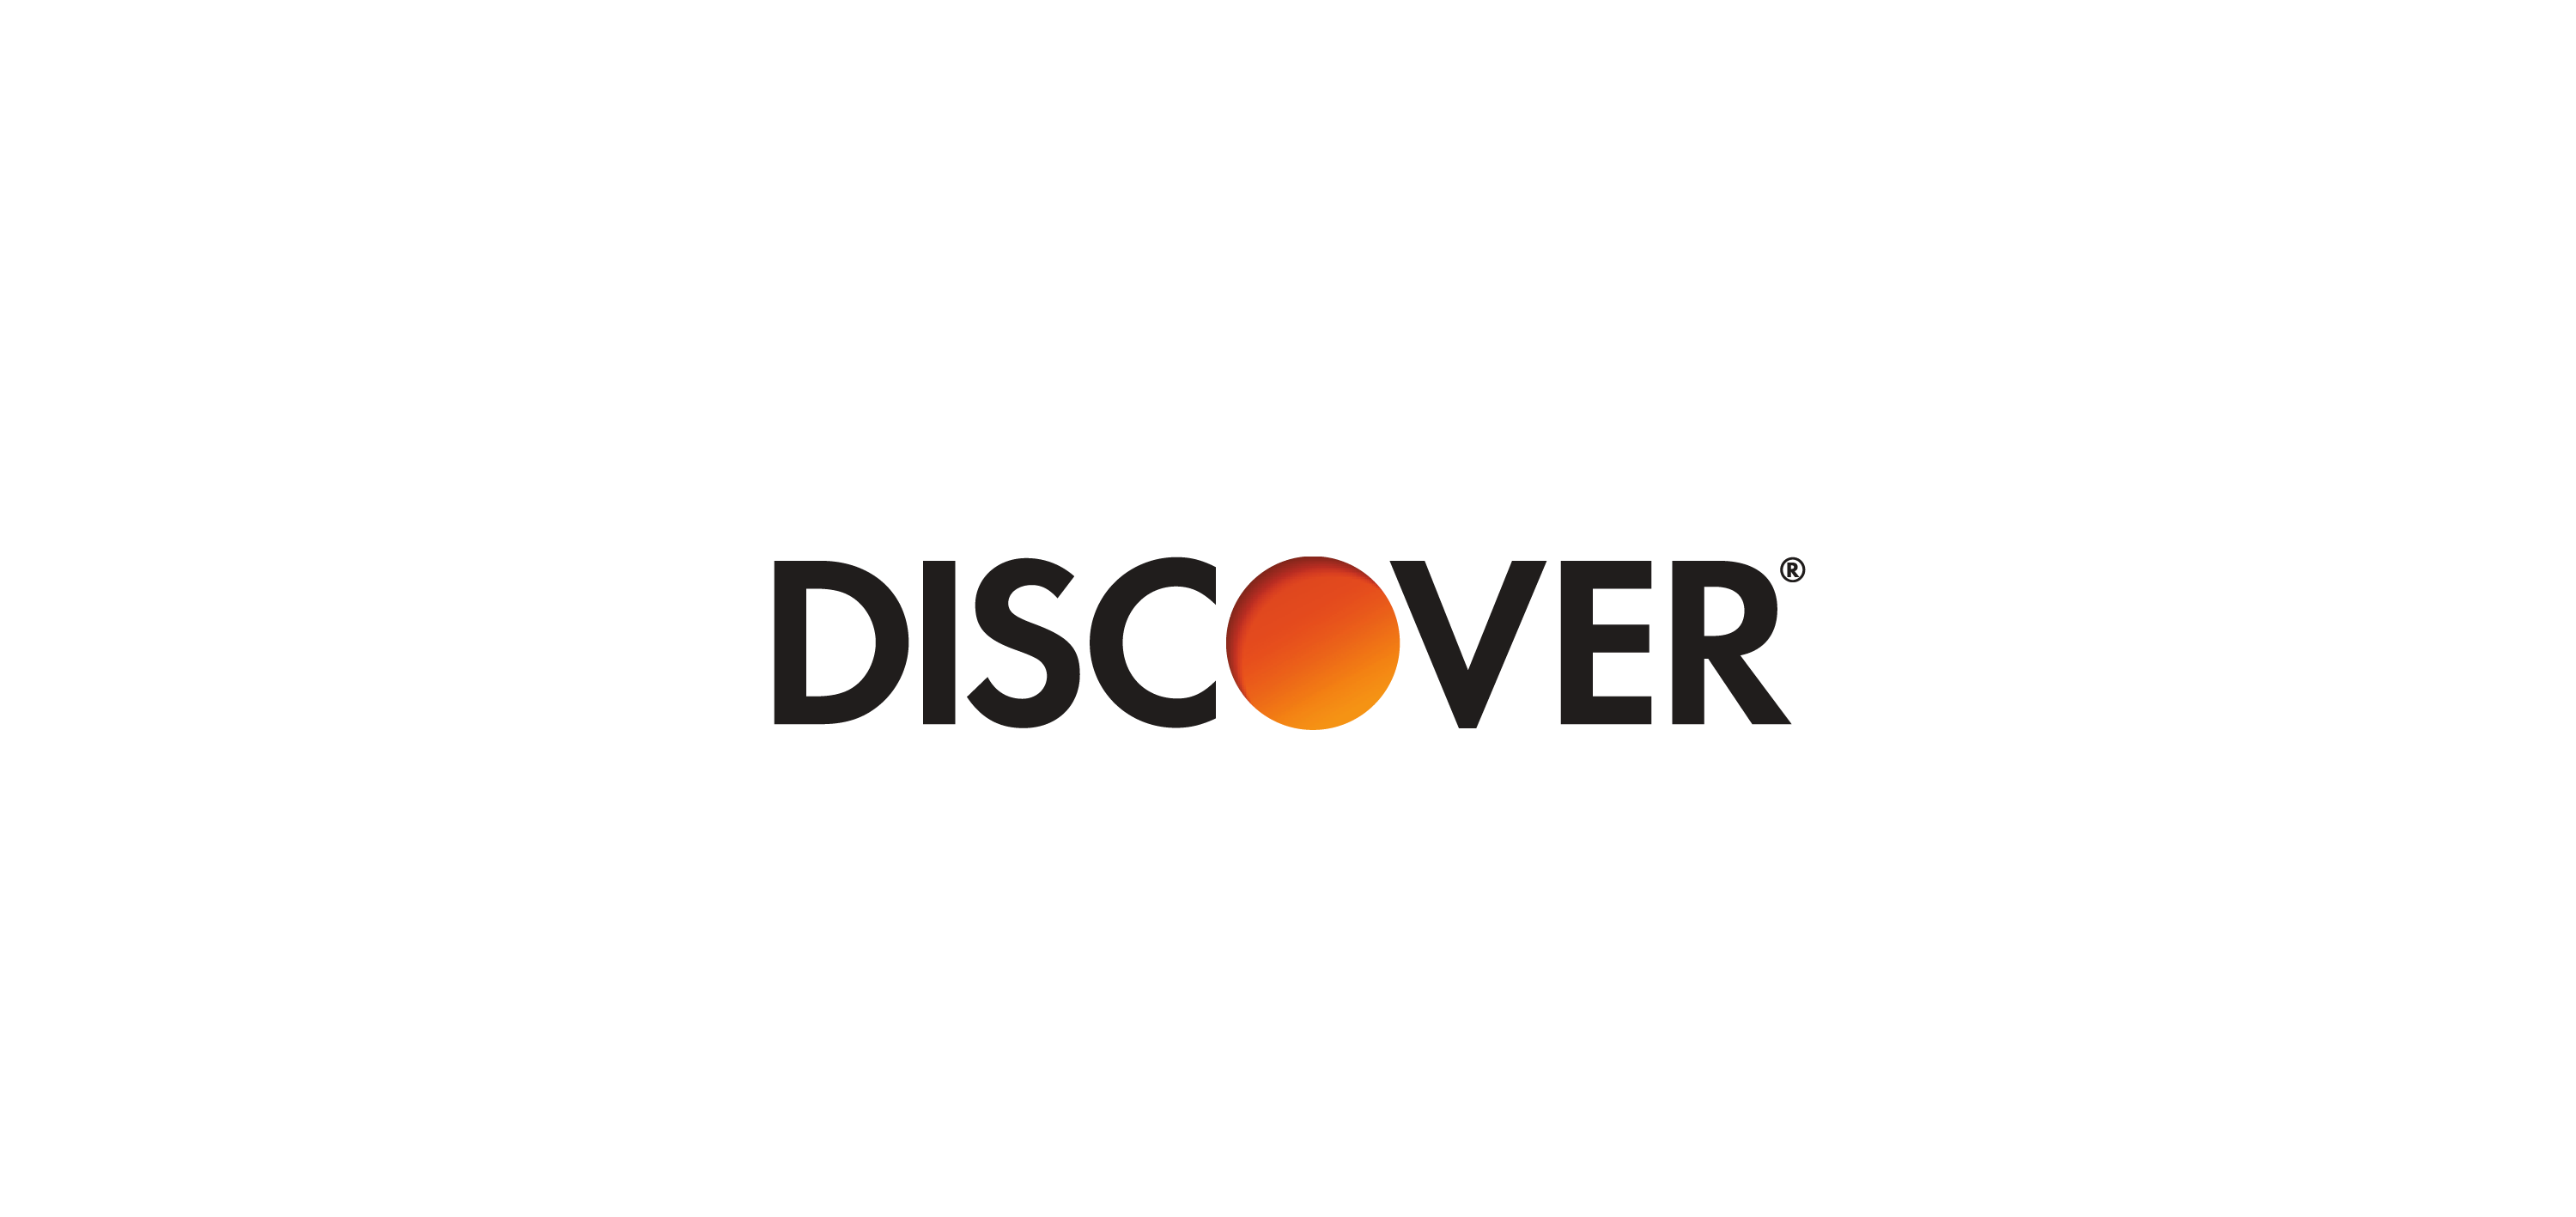 discover logo vector